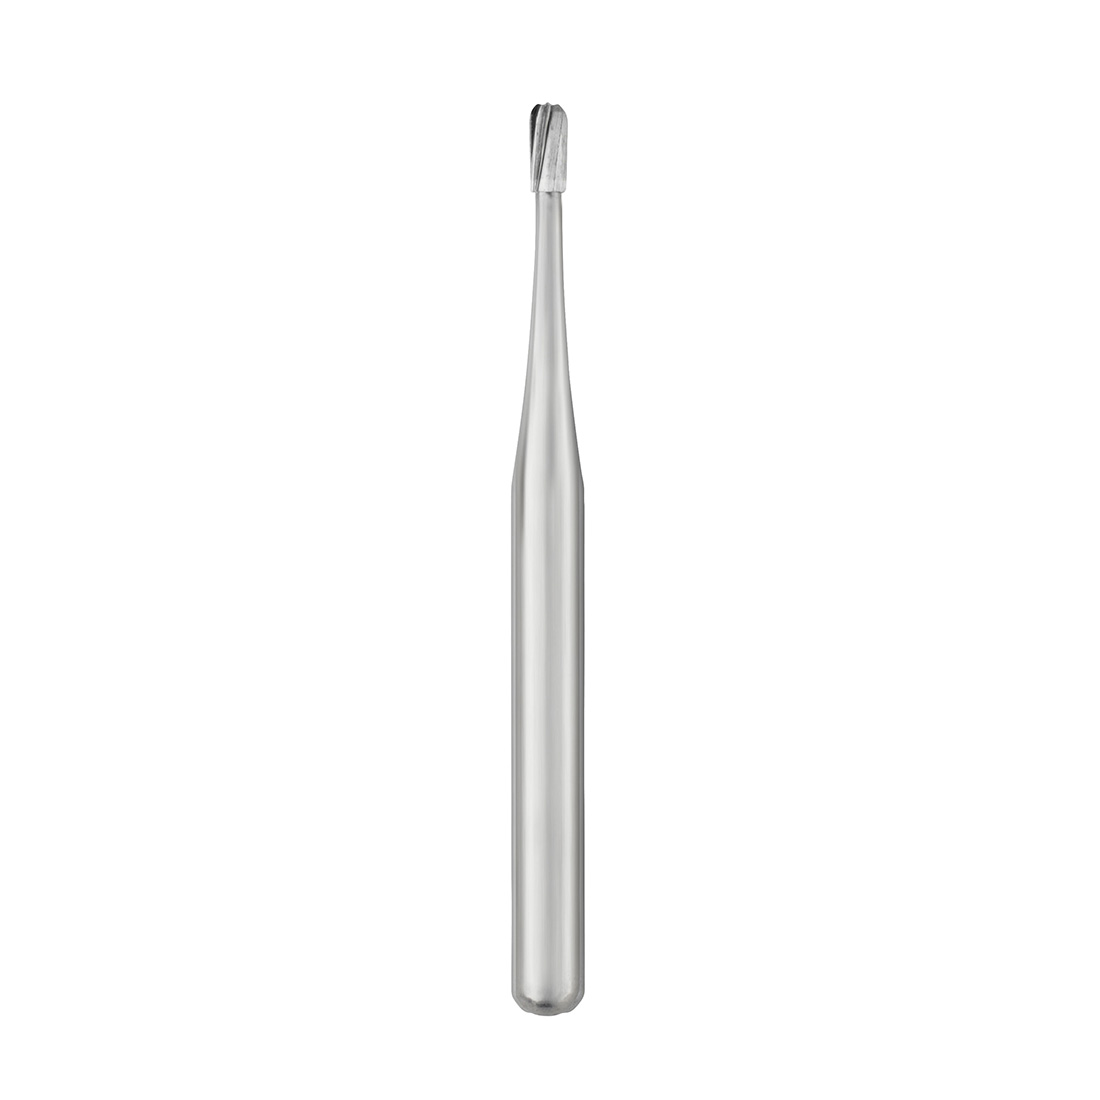 Carbide Bur, #330 Pear, Friction Grip (19mm), Bulk Packaging, Non-Sterile - 100/Box